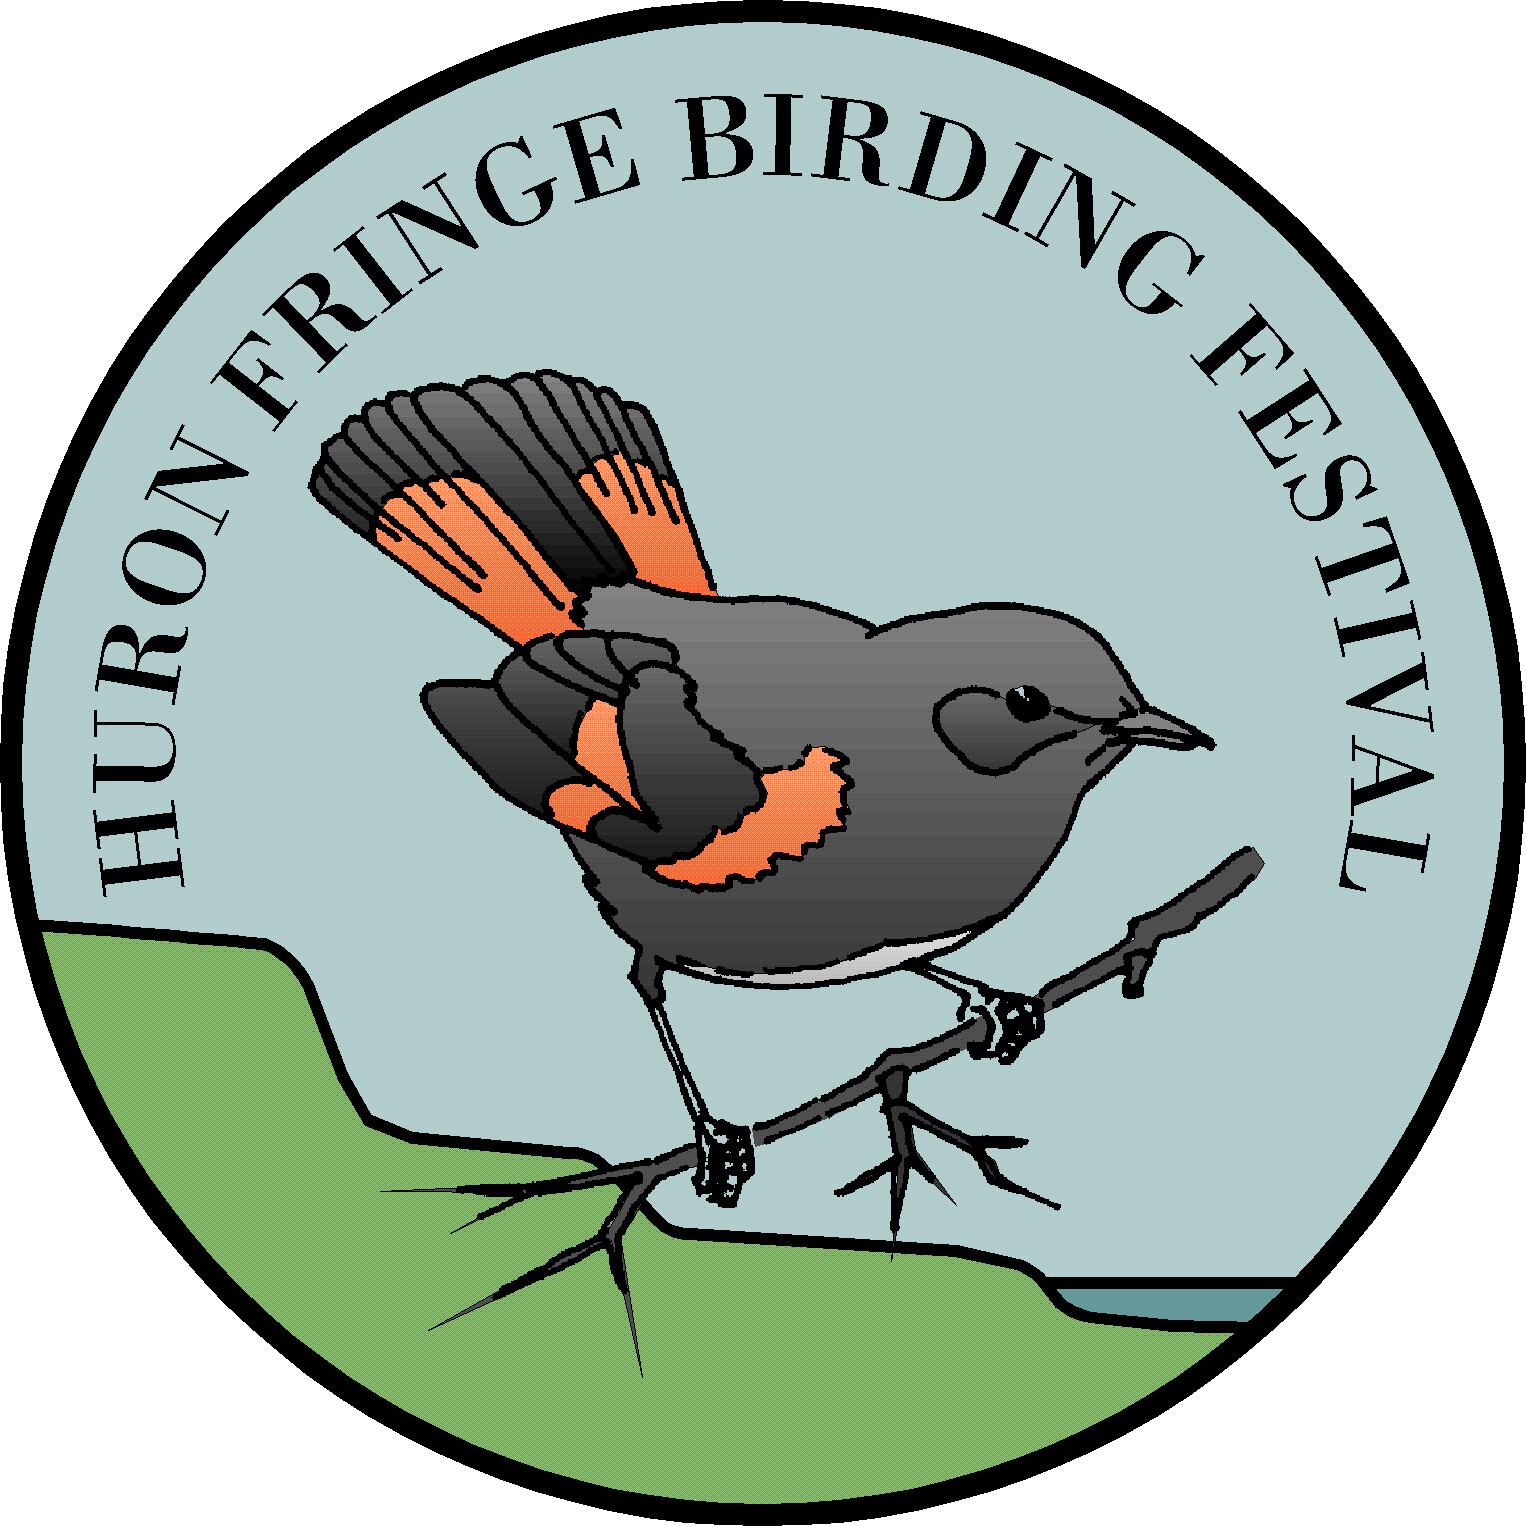 Birdwatching huronfringefest brdfest. Pigeon clipart bird migration